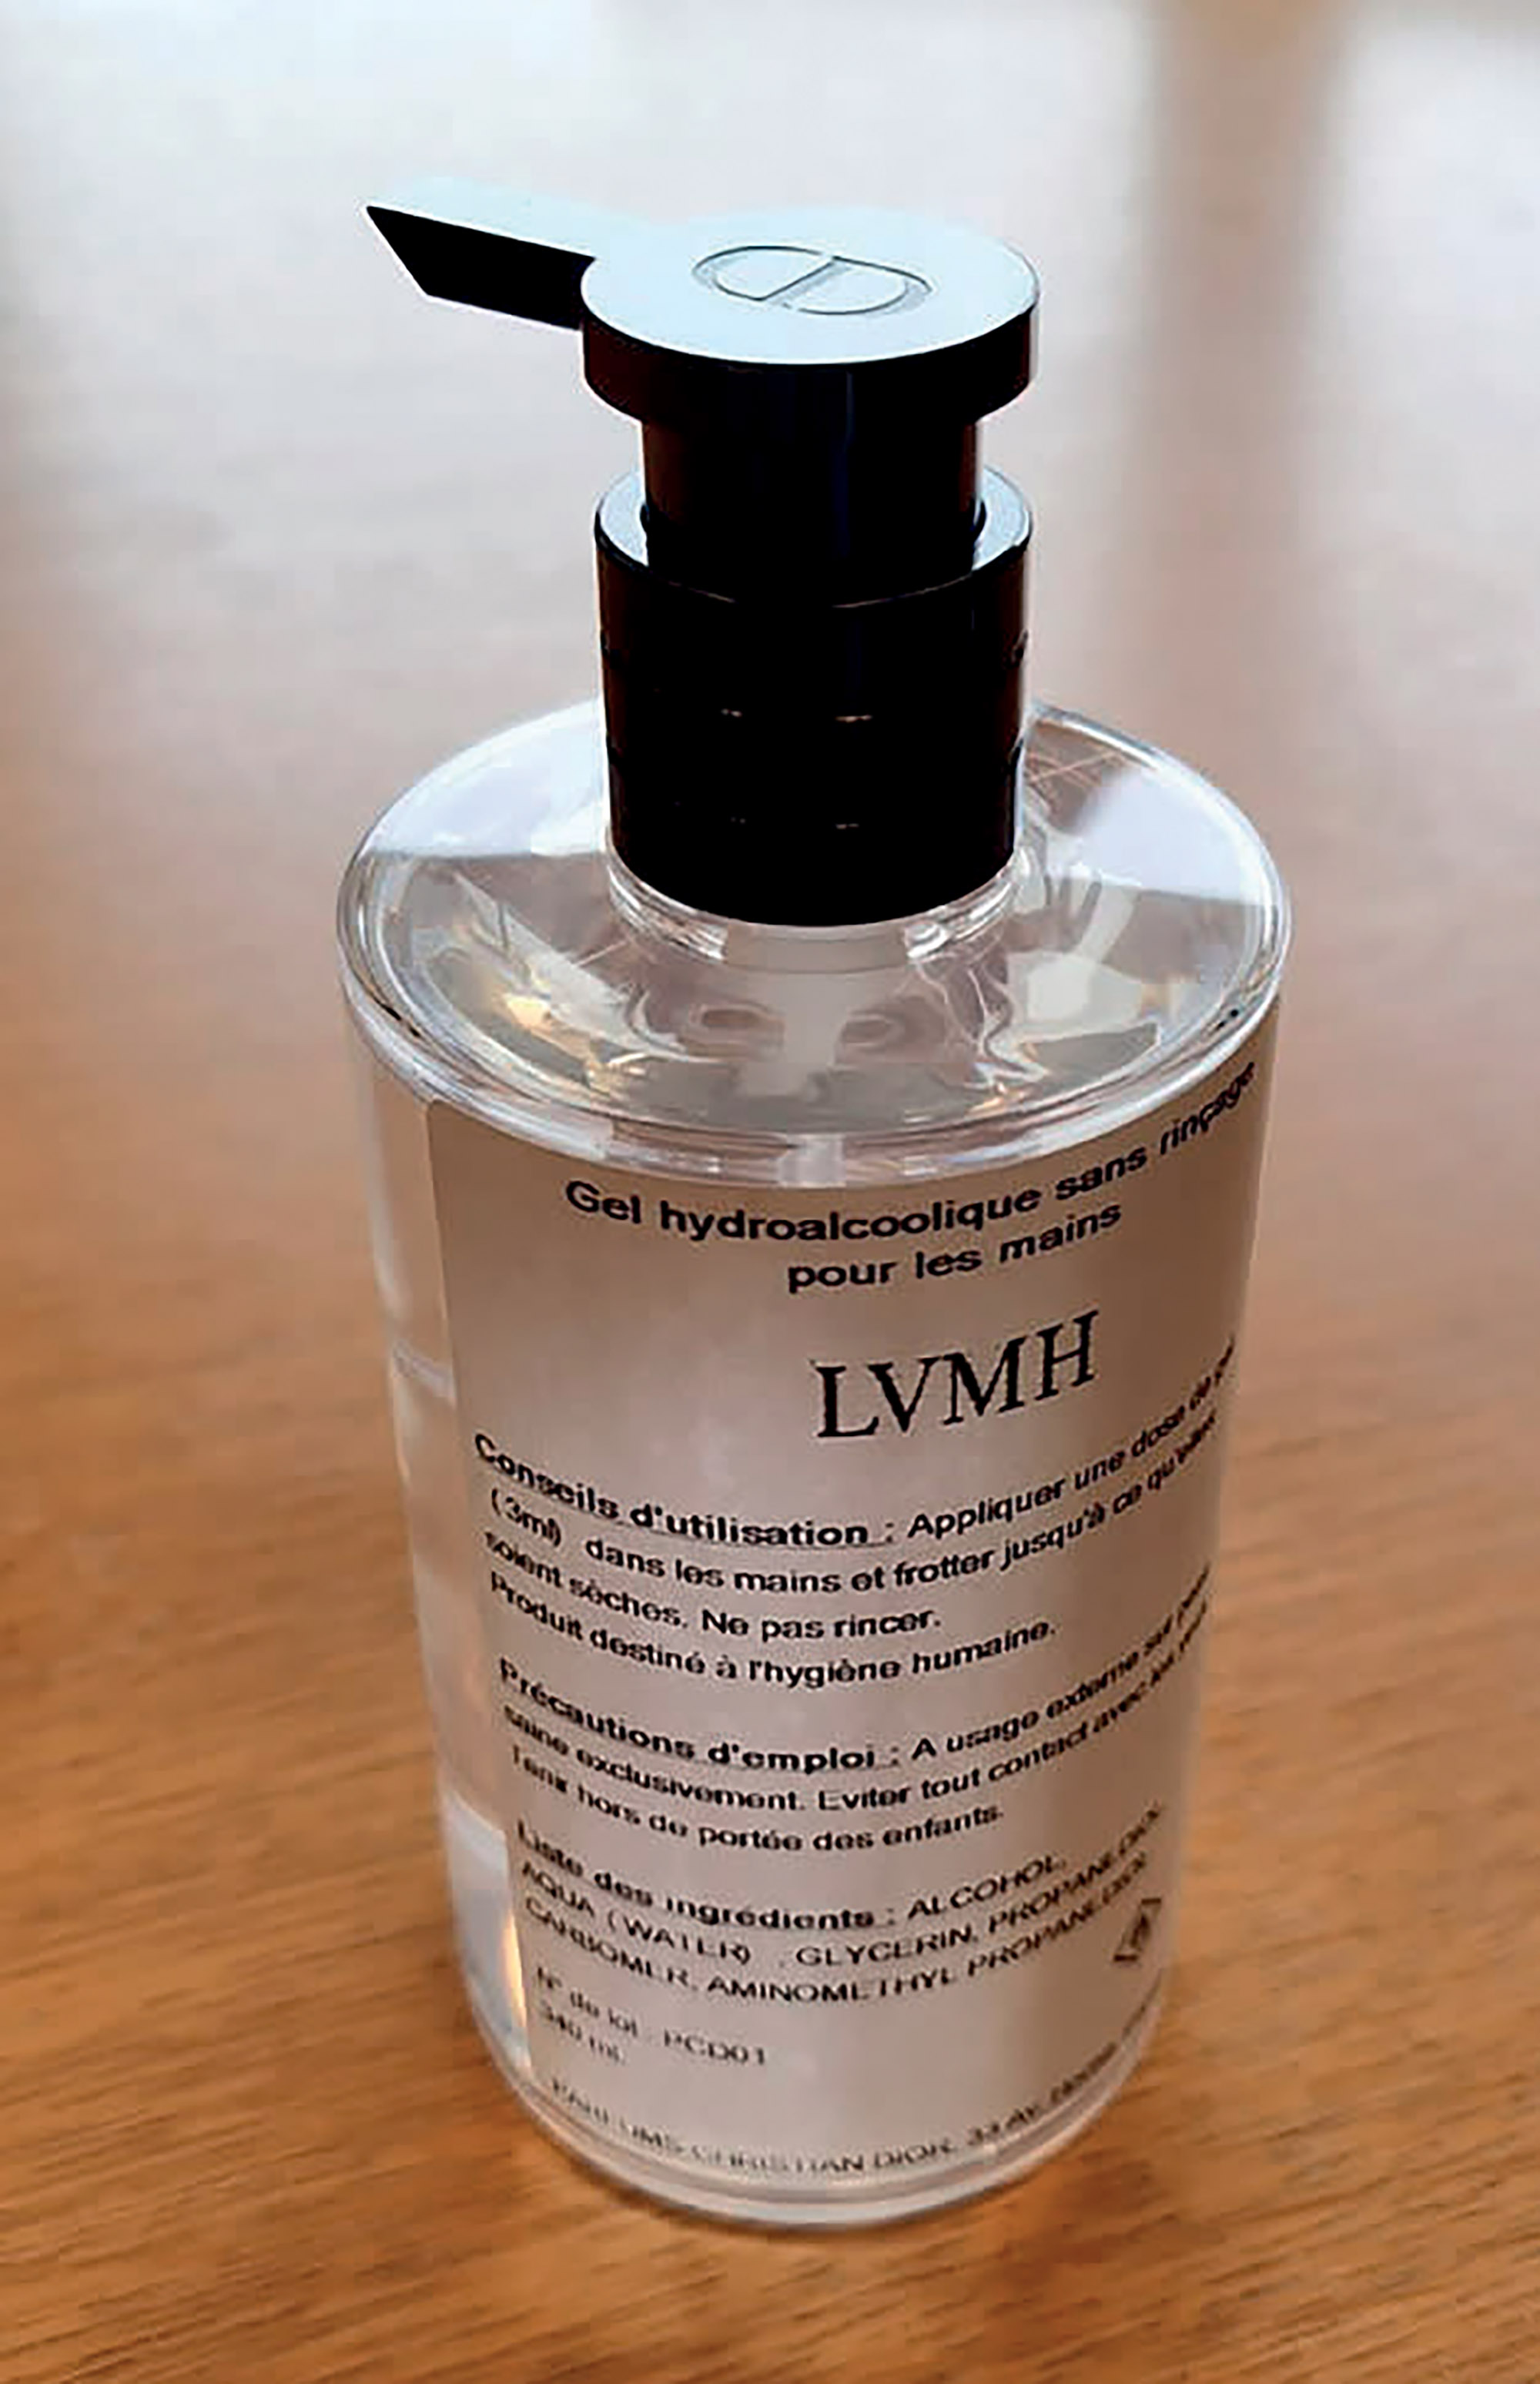 Tình hình ngành thời trang - gel rửa tay của LVMH